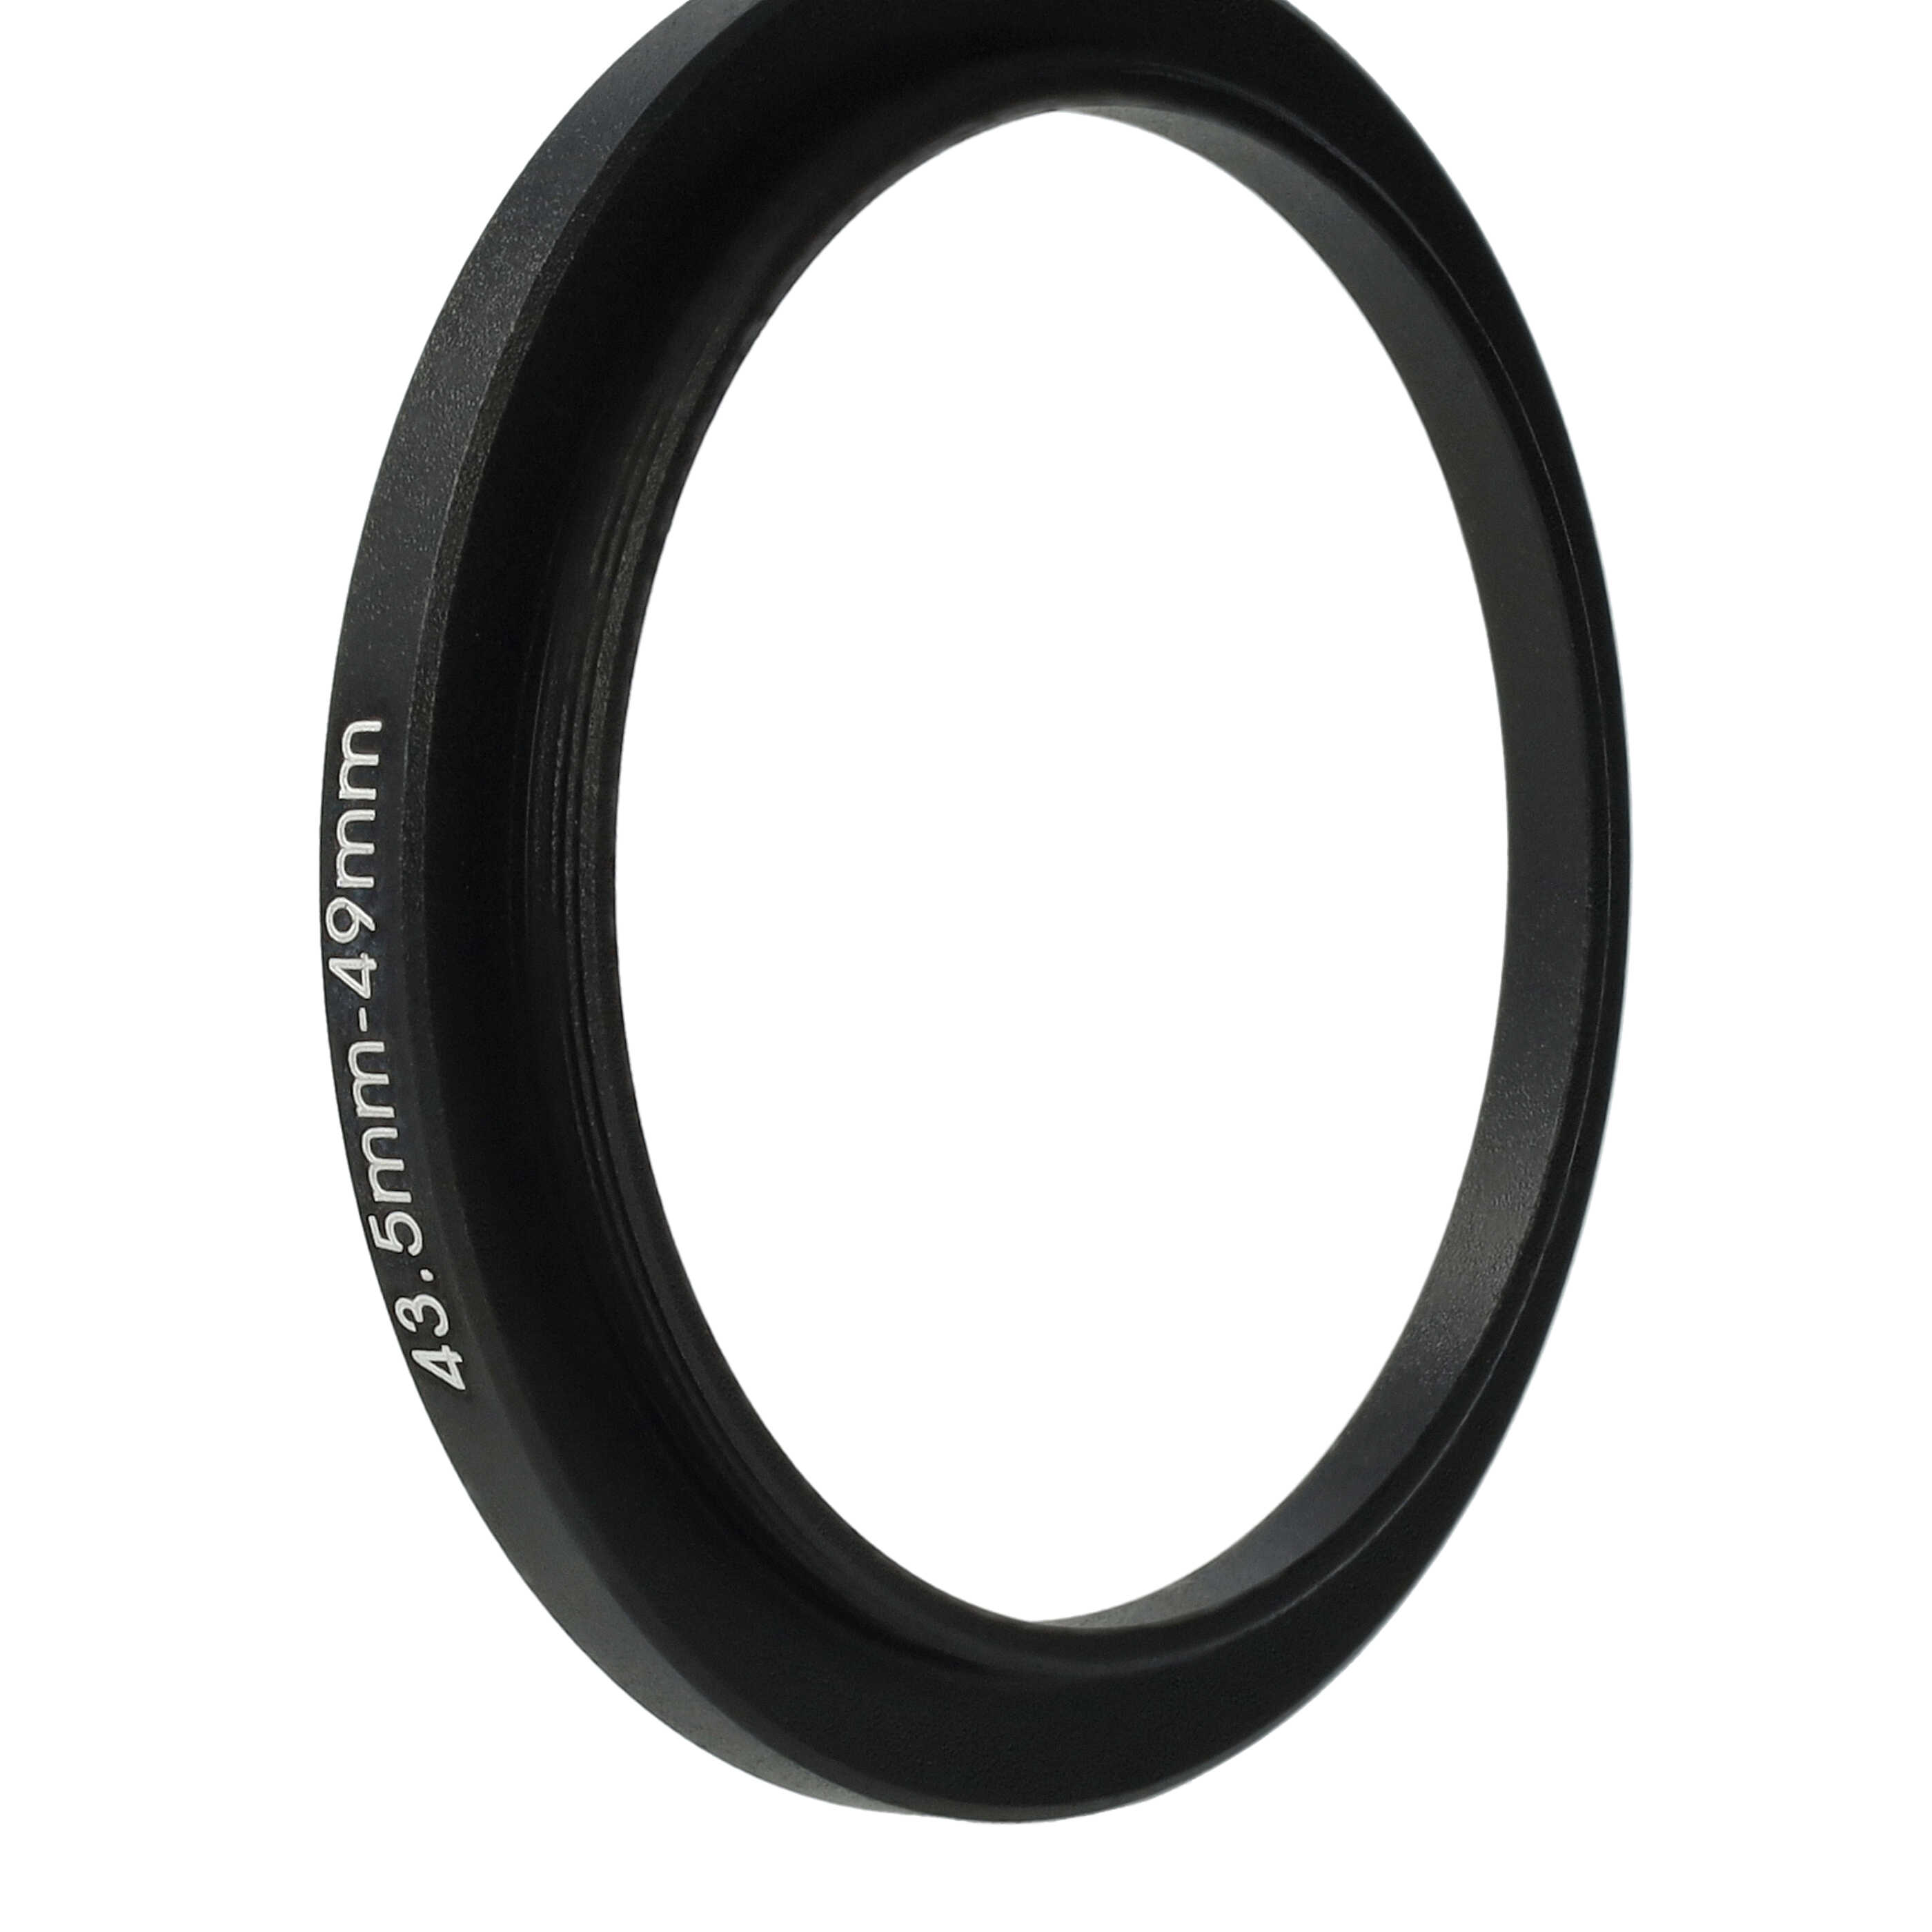 Step-Up-Ring Adapter 43,5 mm auf 49 mm passend für diverse Kamera-Objektive - Filteradapter